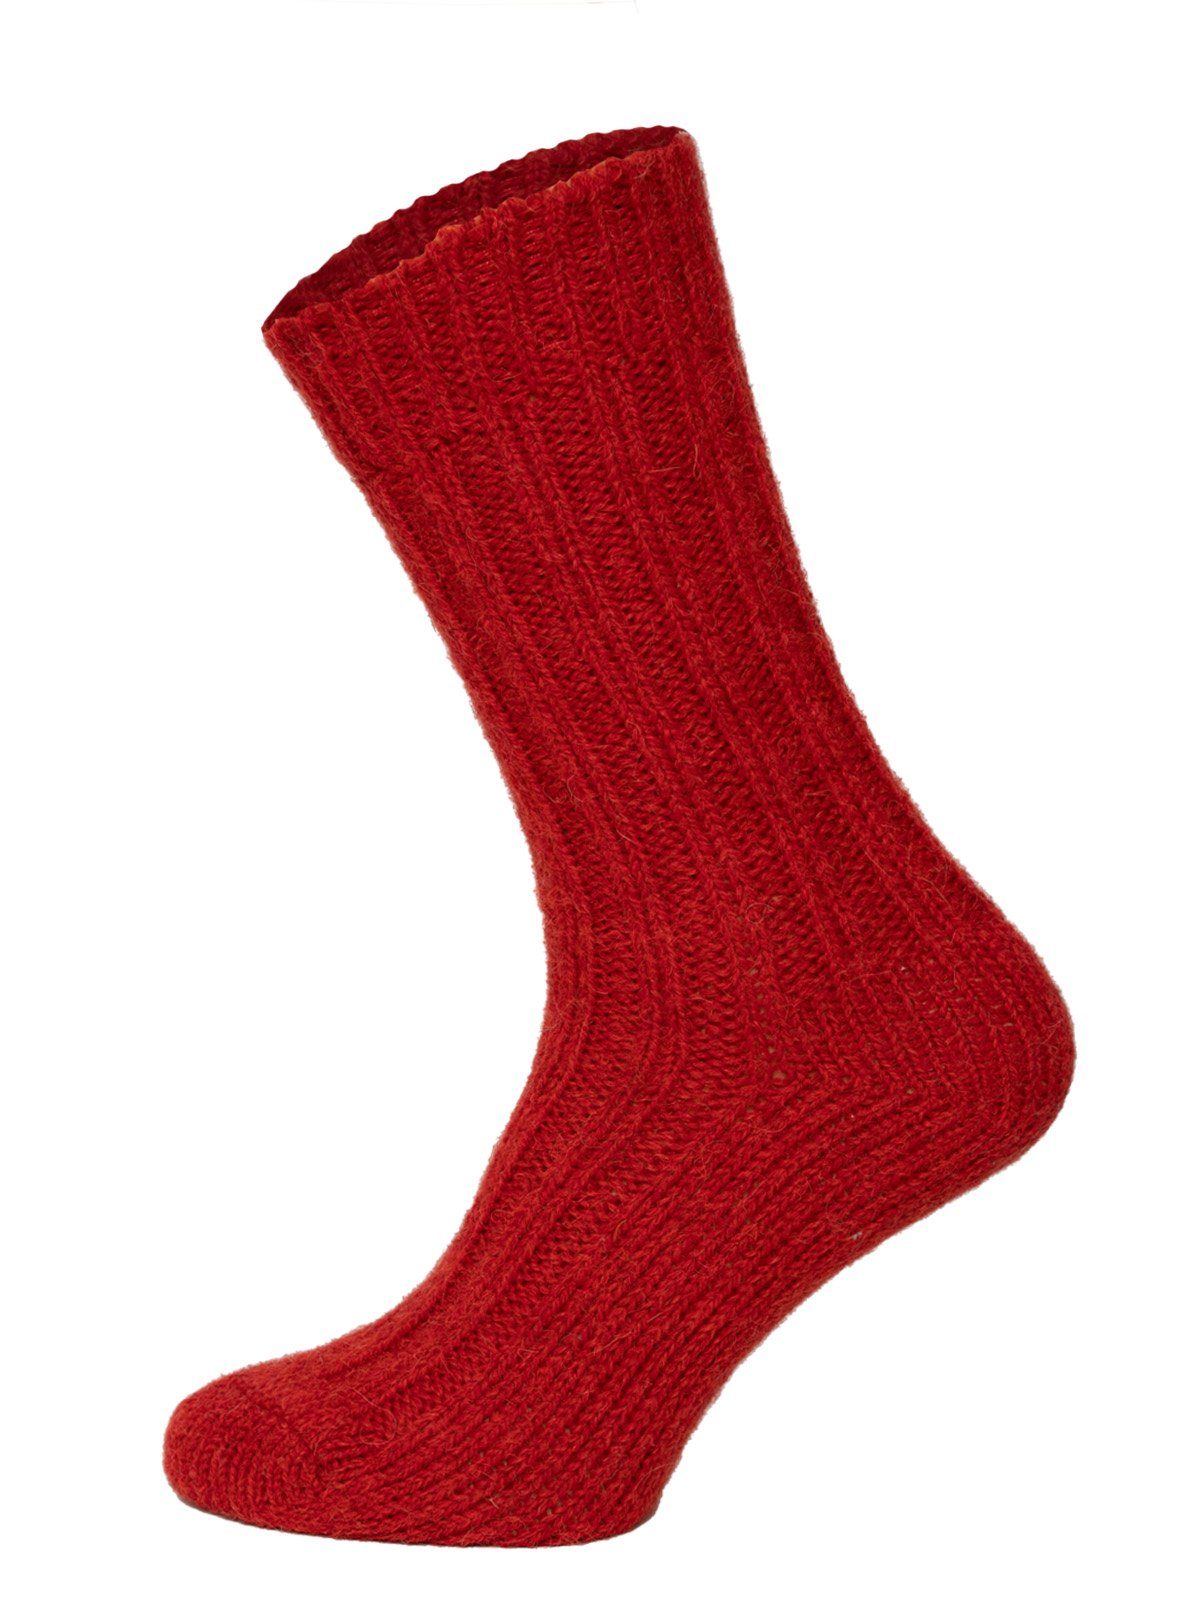 Umschlag Alpakawolle mit mit 40% Socken Strapazierfähige warme mit HomeOfSocks Socken Alpakawolle und Wollanteil Bunte Socken Wolle und Rot und